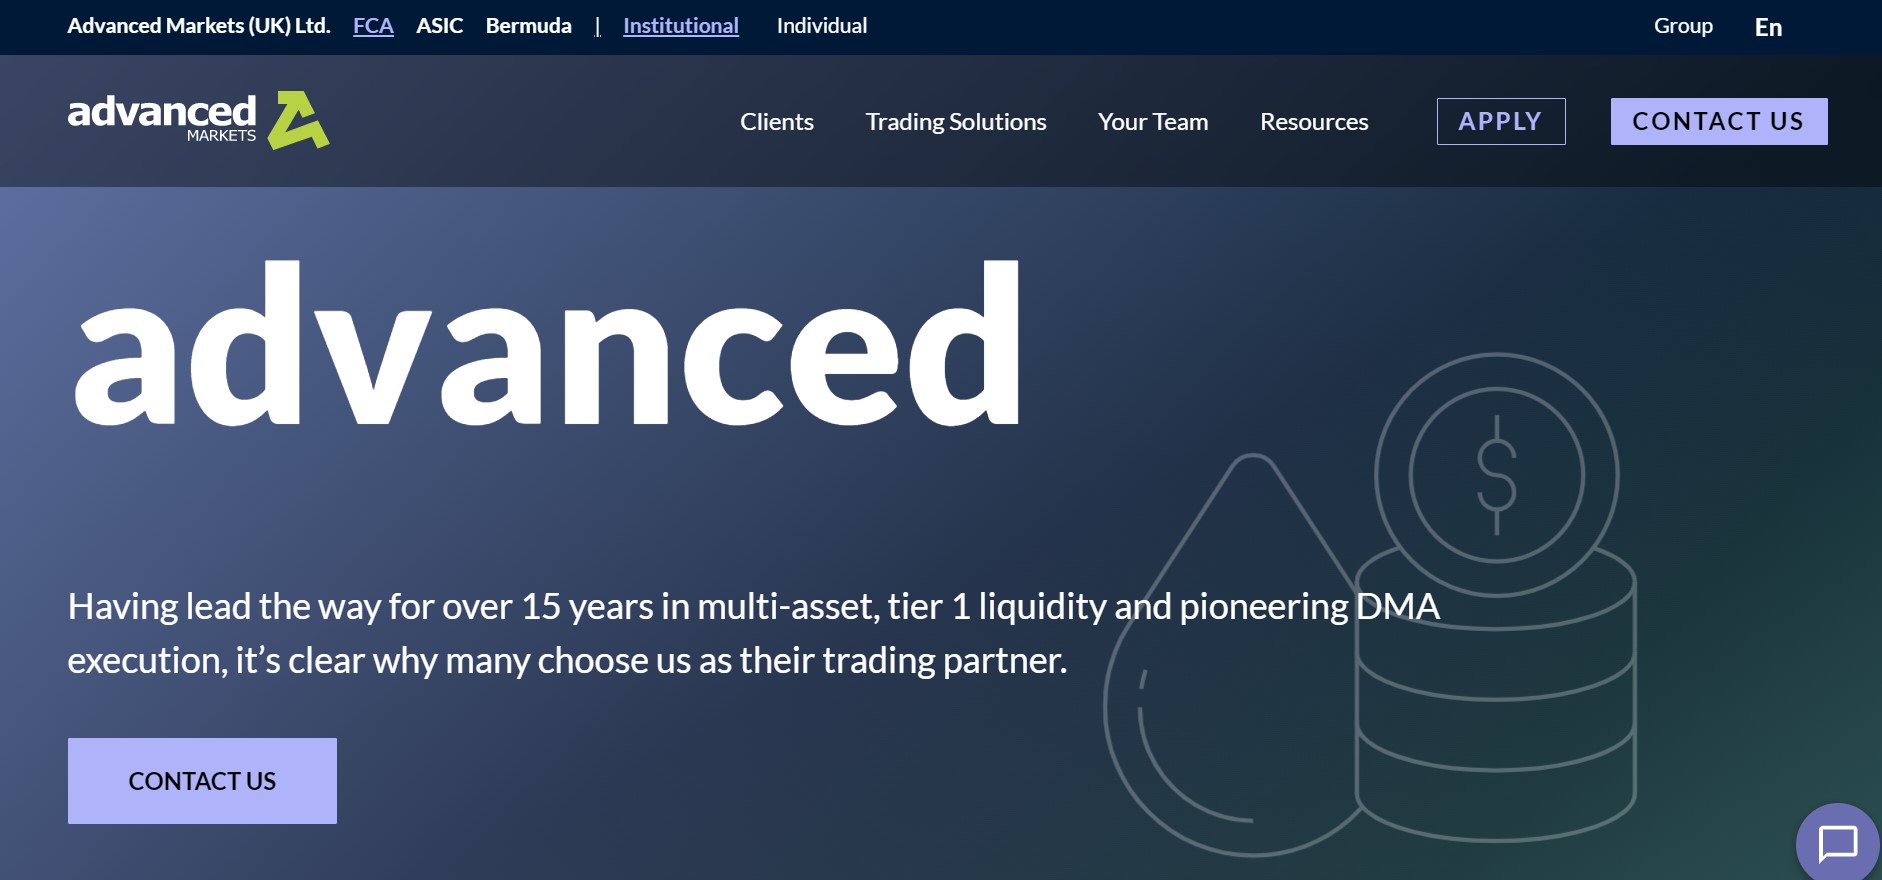 Advanced Markets website